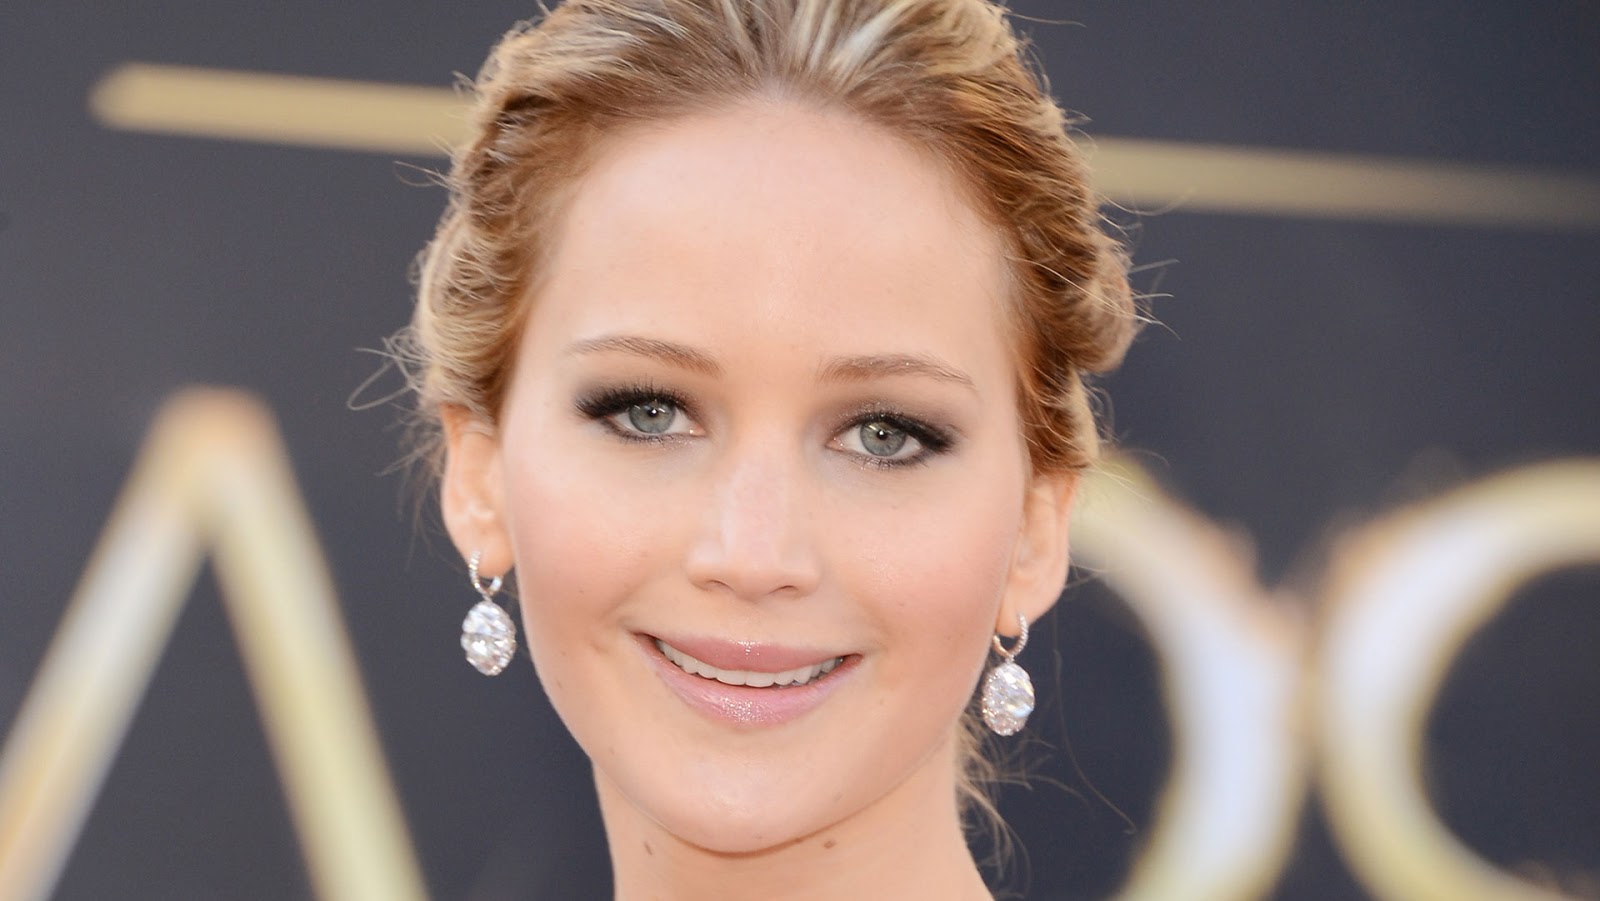 JemimaLou Jennifer Lawrence Oscars Make Up Tutorial